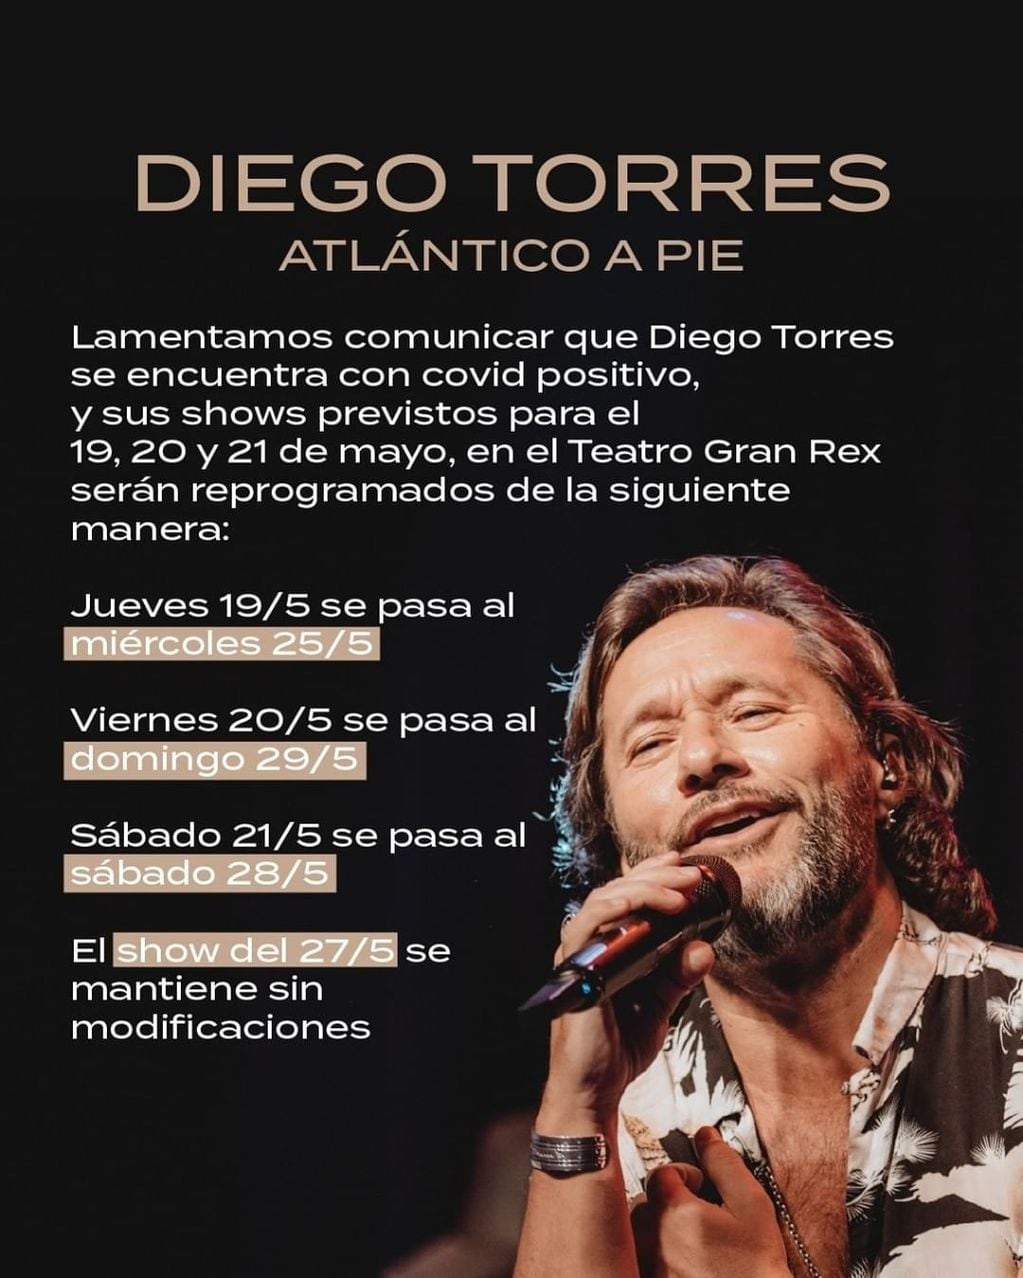 Diego Torres tiene coronavirus y reprogramó sus conciertos en el Gran Rex